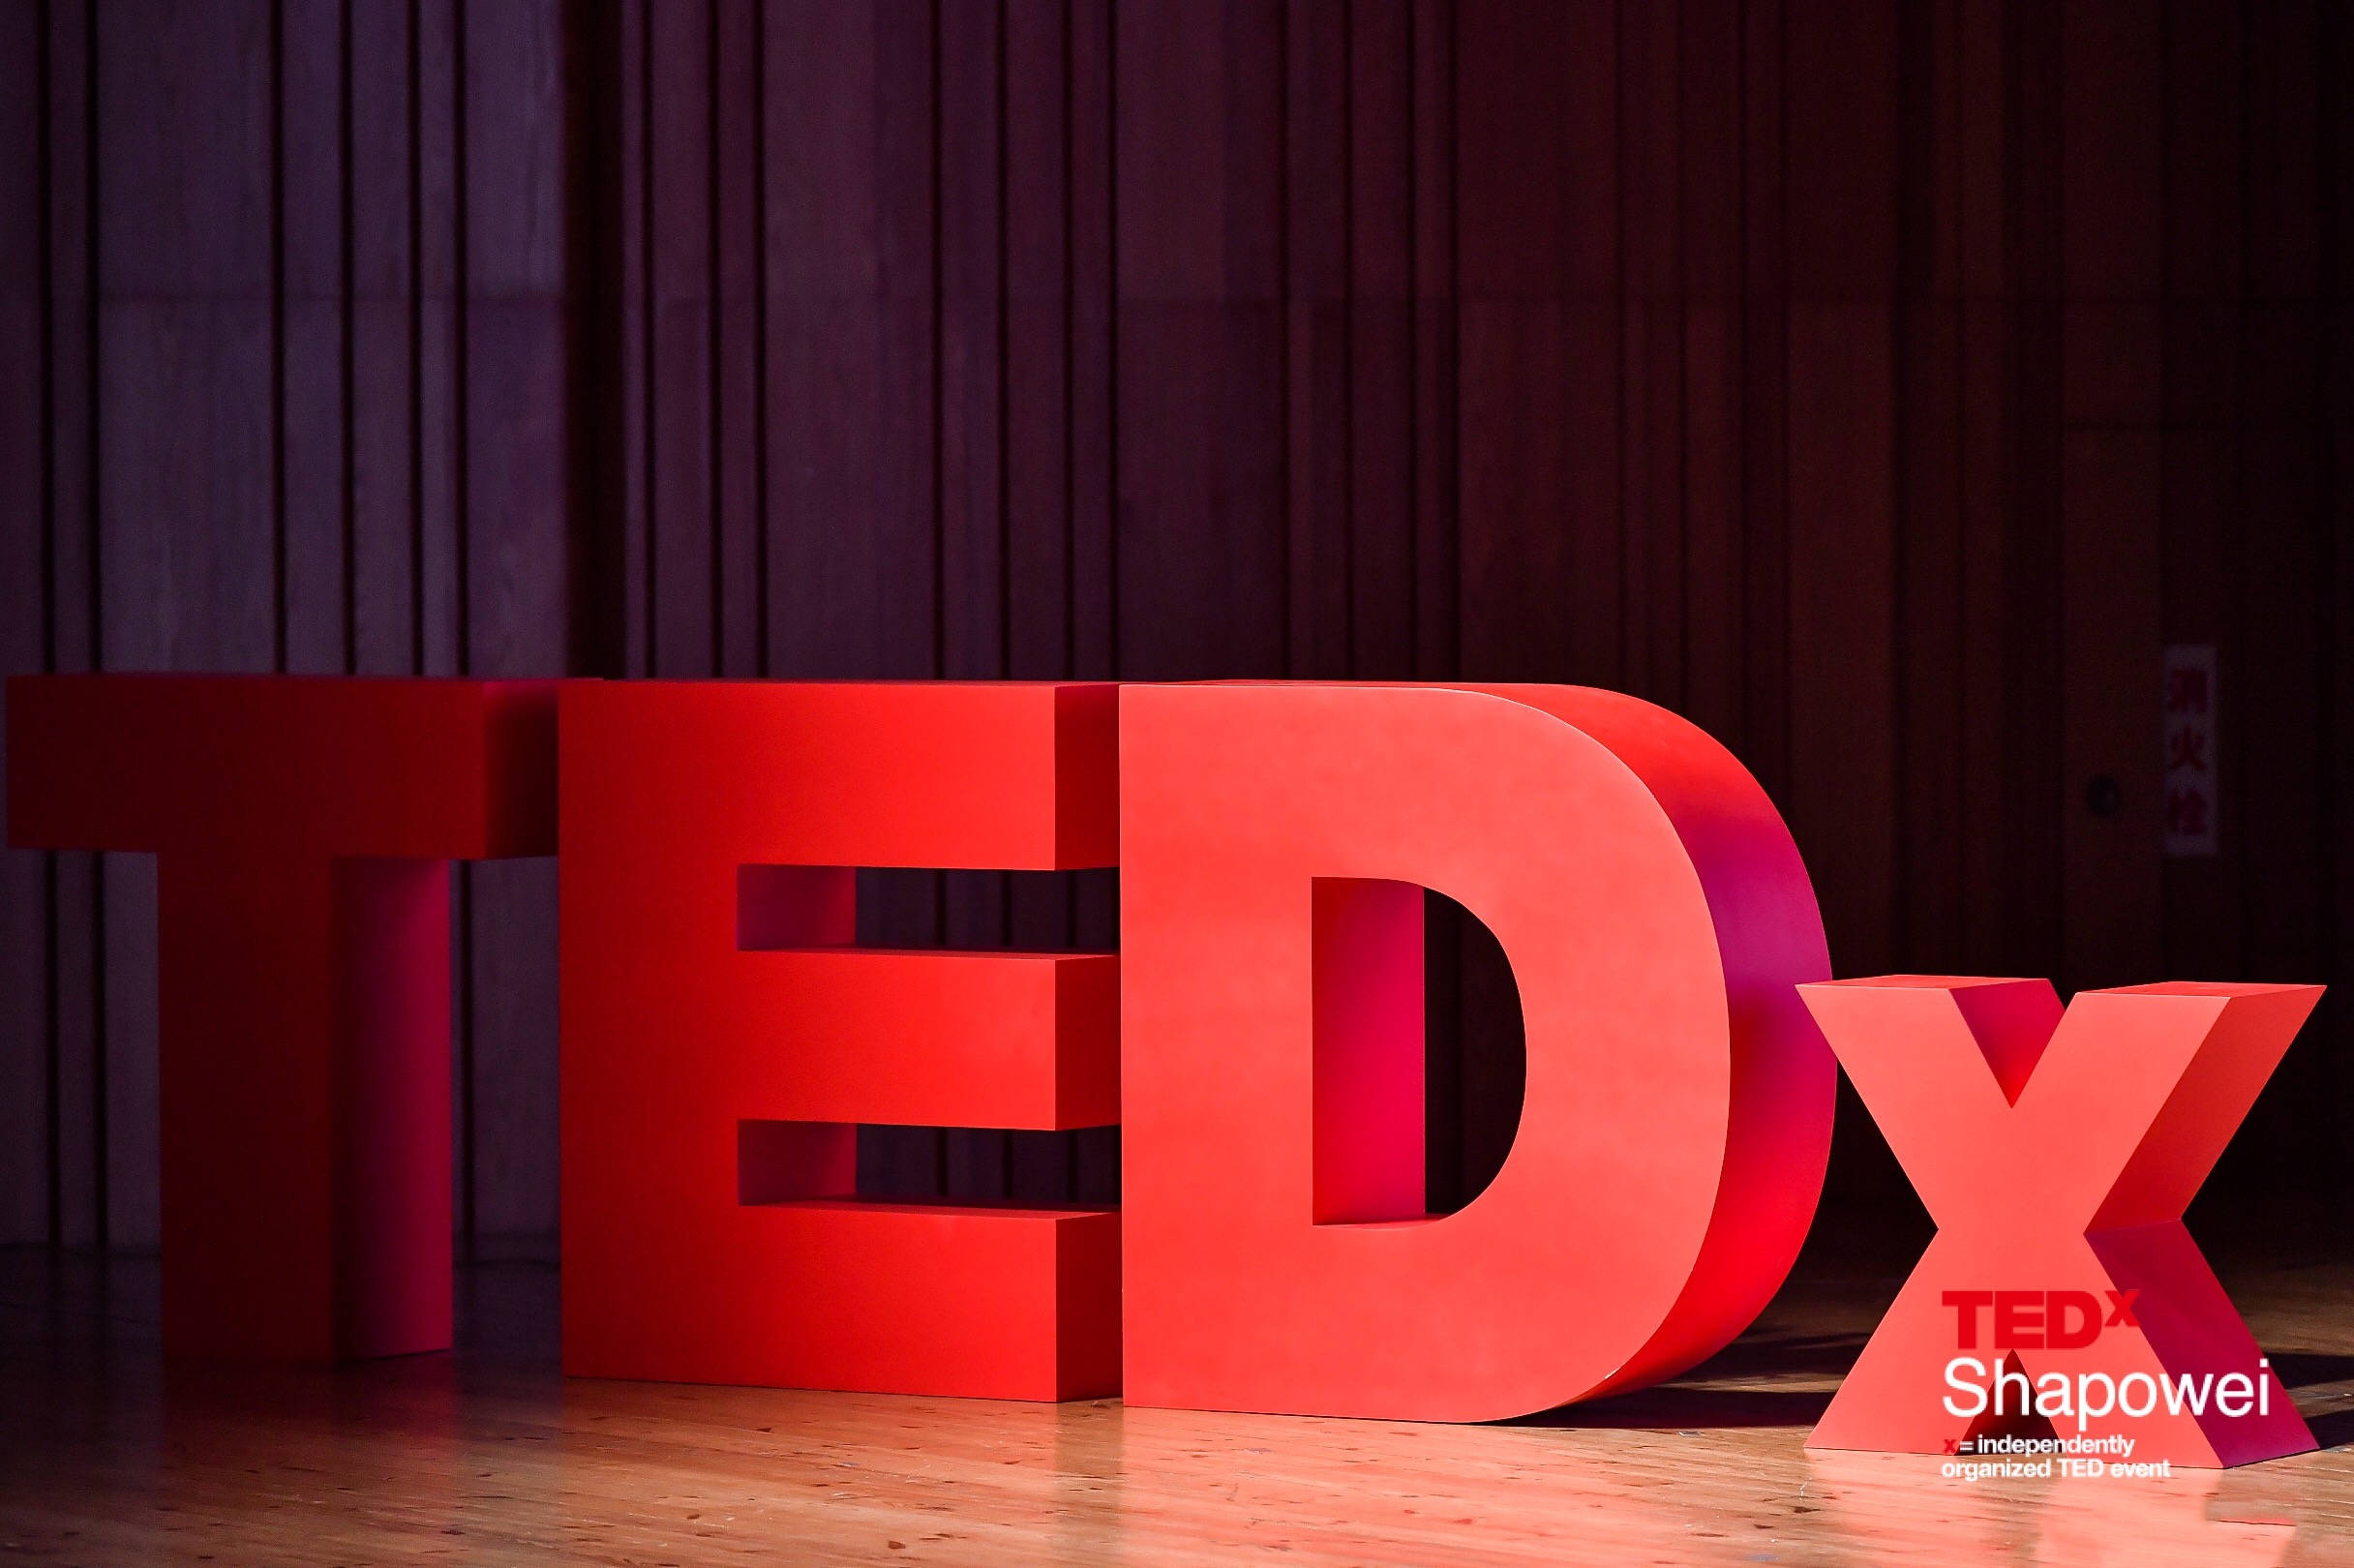 2018廈門TEDxShapowei 年度大會在廈門大學圓滿落幕